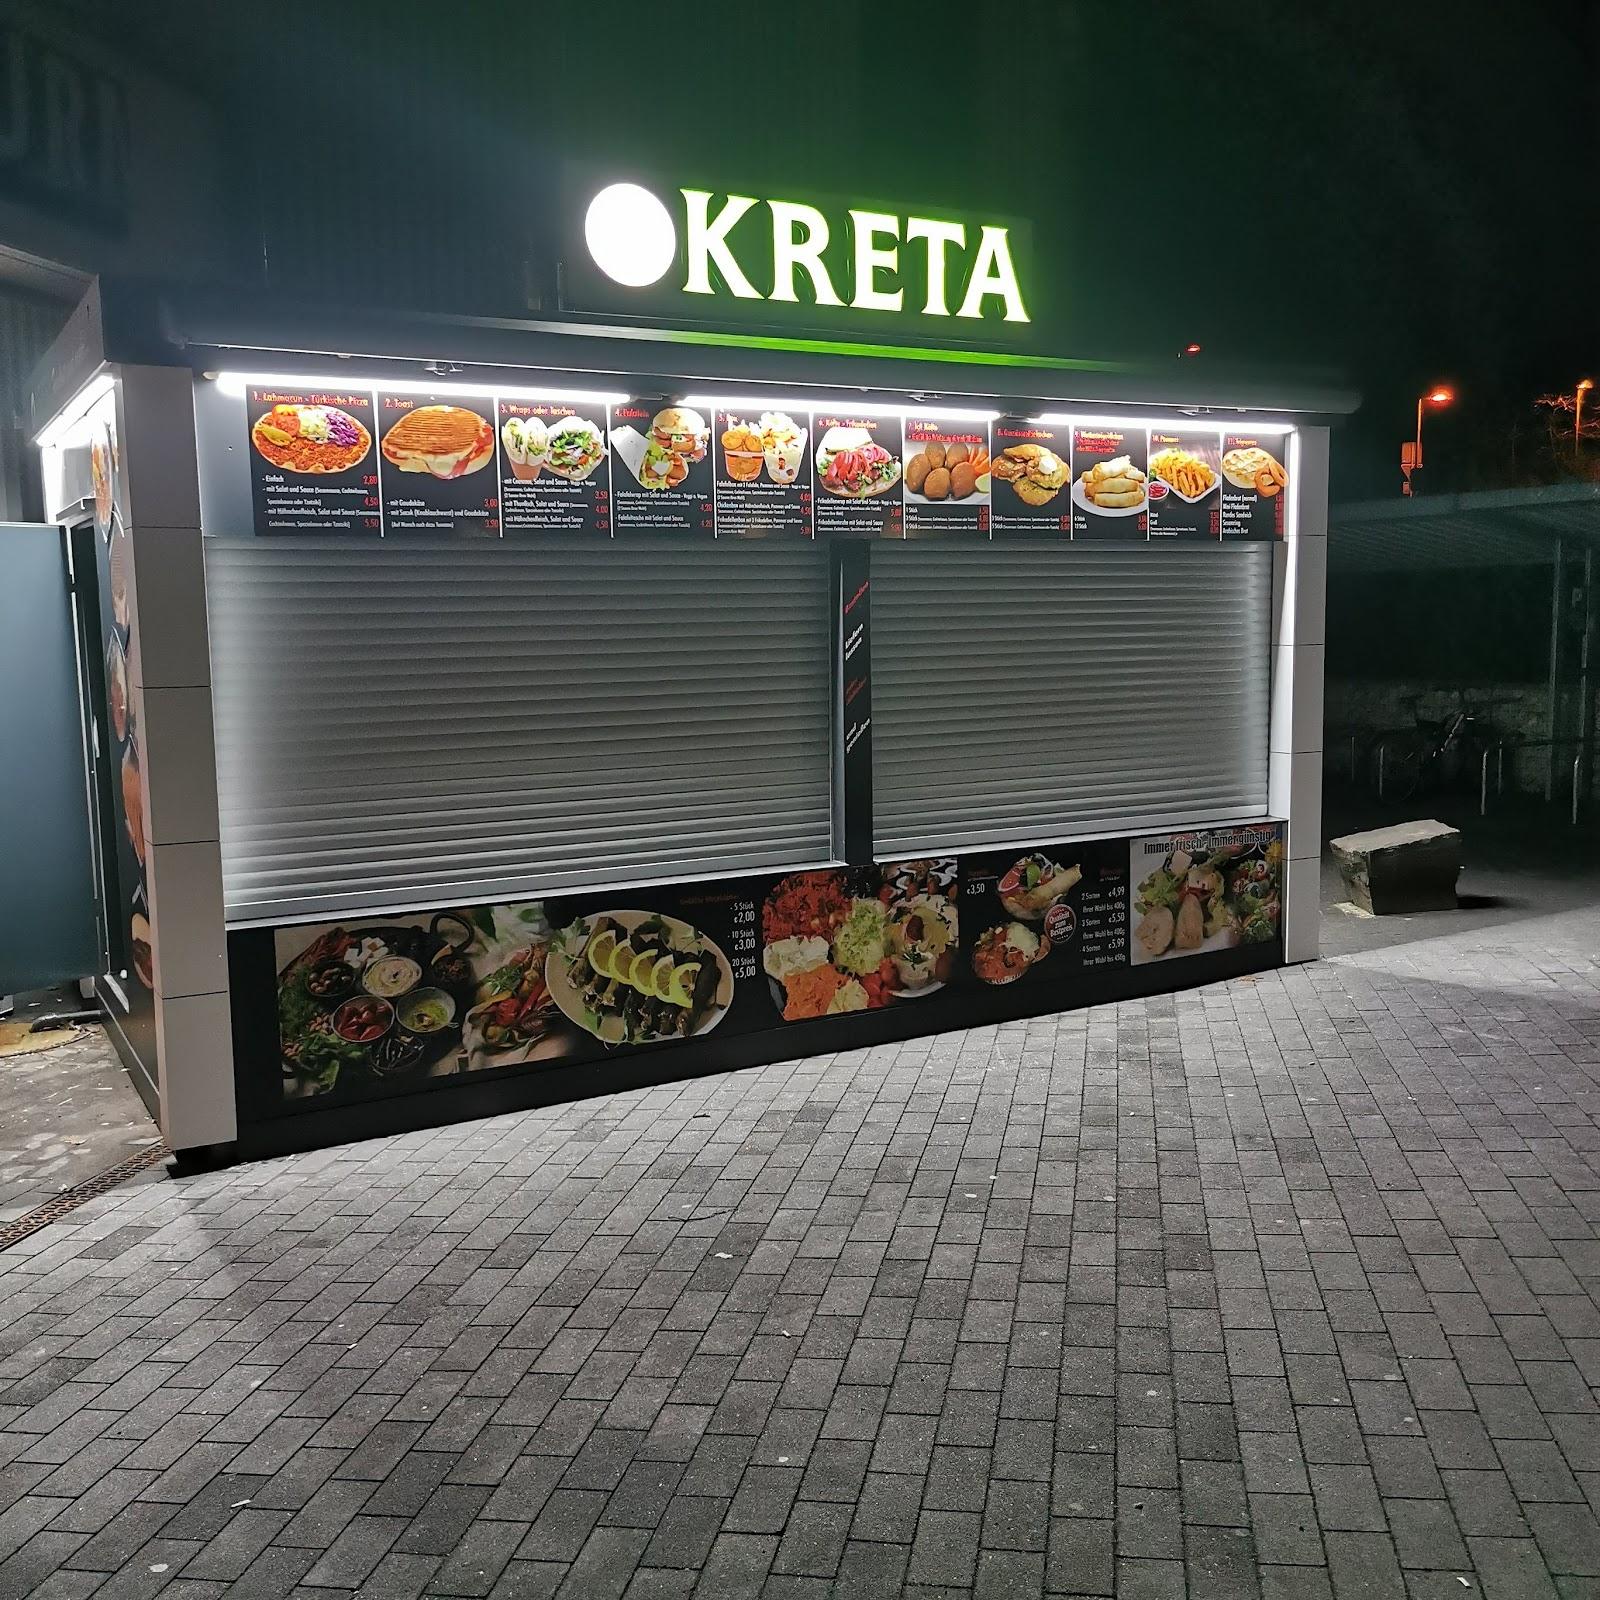 Restaurant "Kreta Feinkost" in Hürth